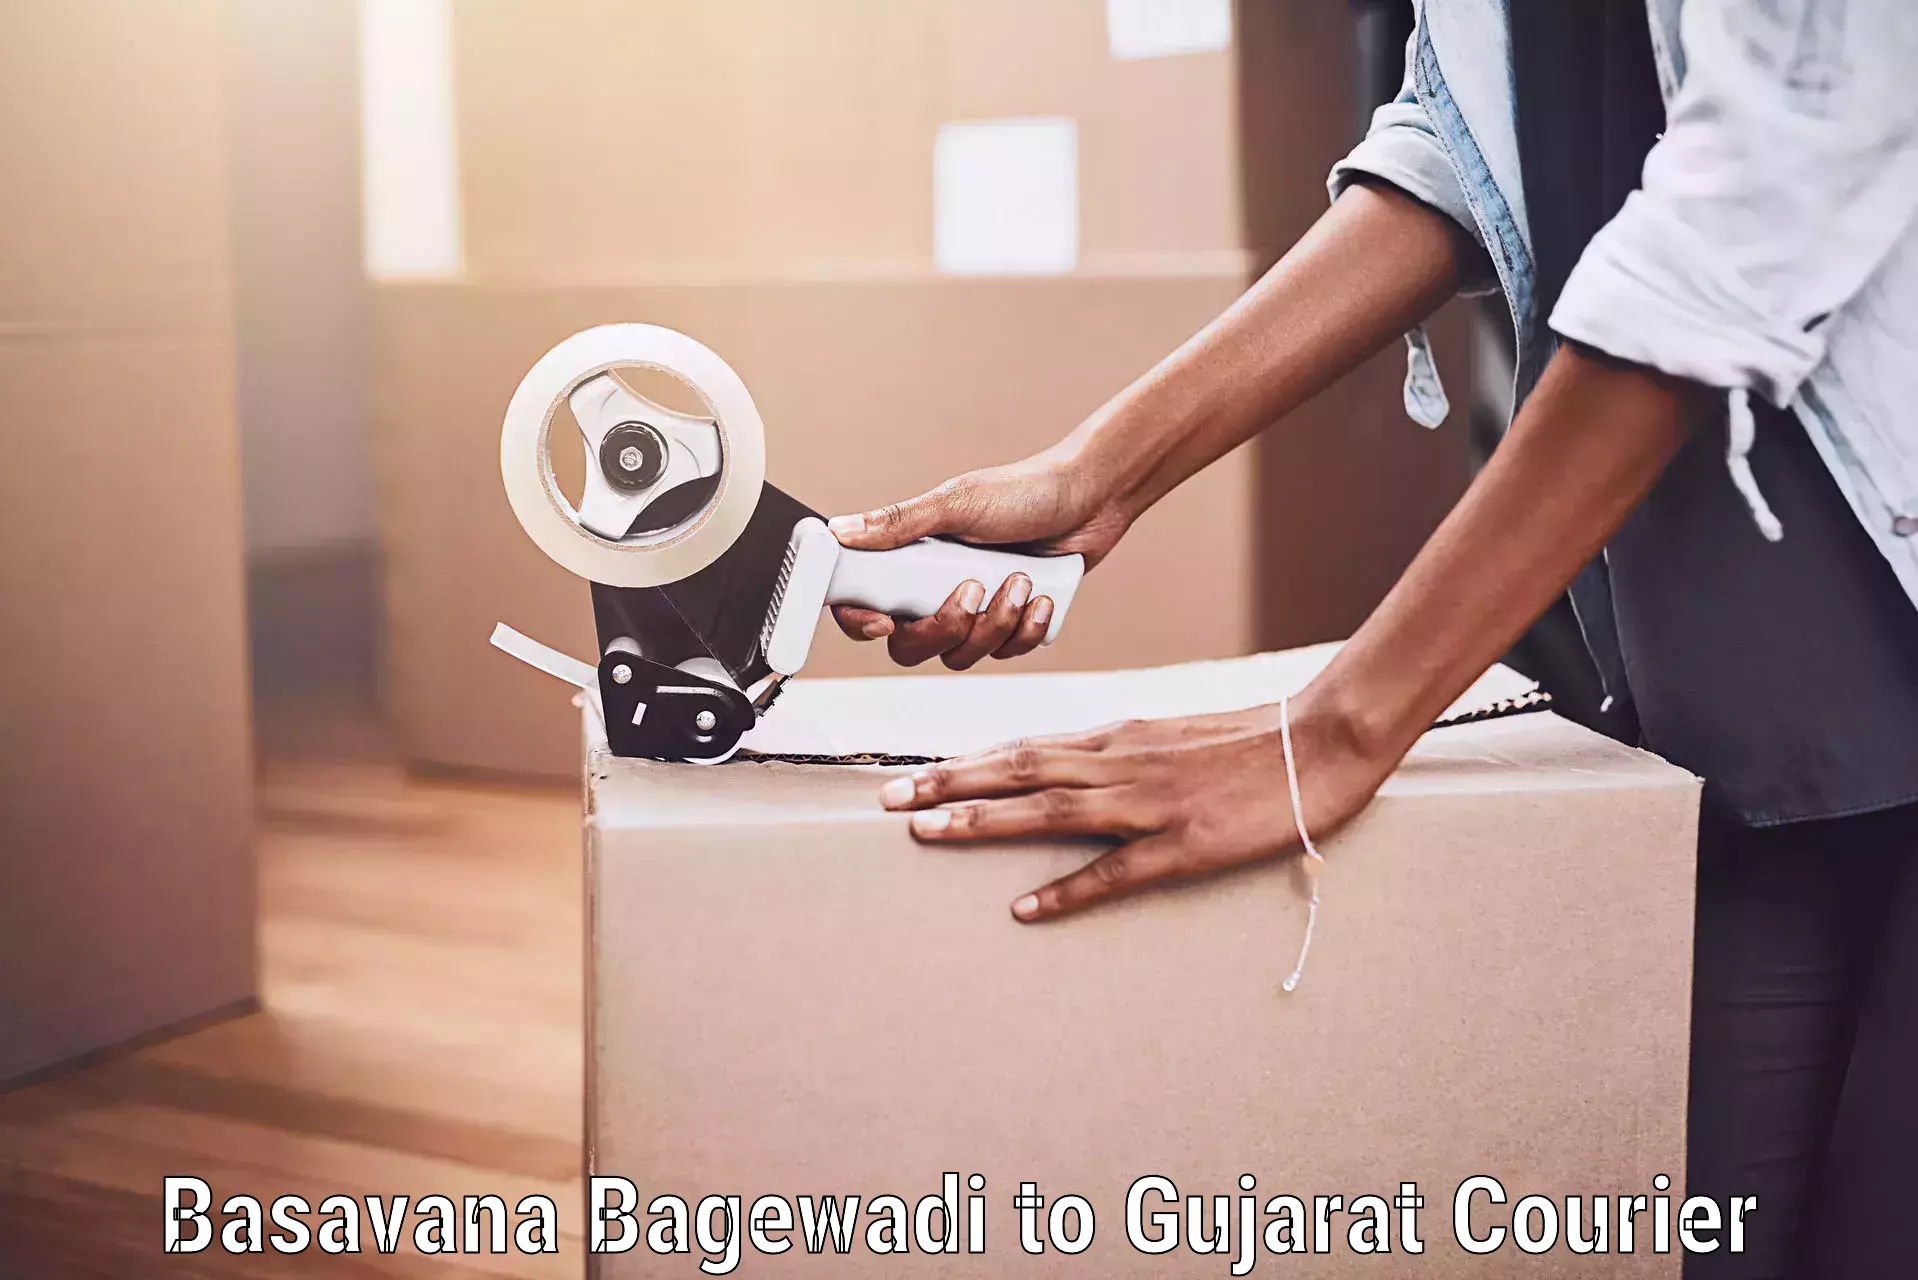 Luggage transport consultancy Basavana Bagewadi to Gujarat